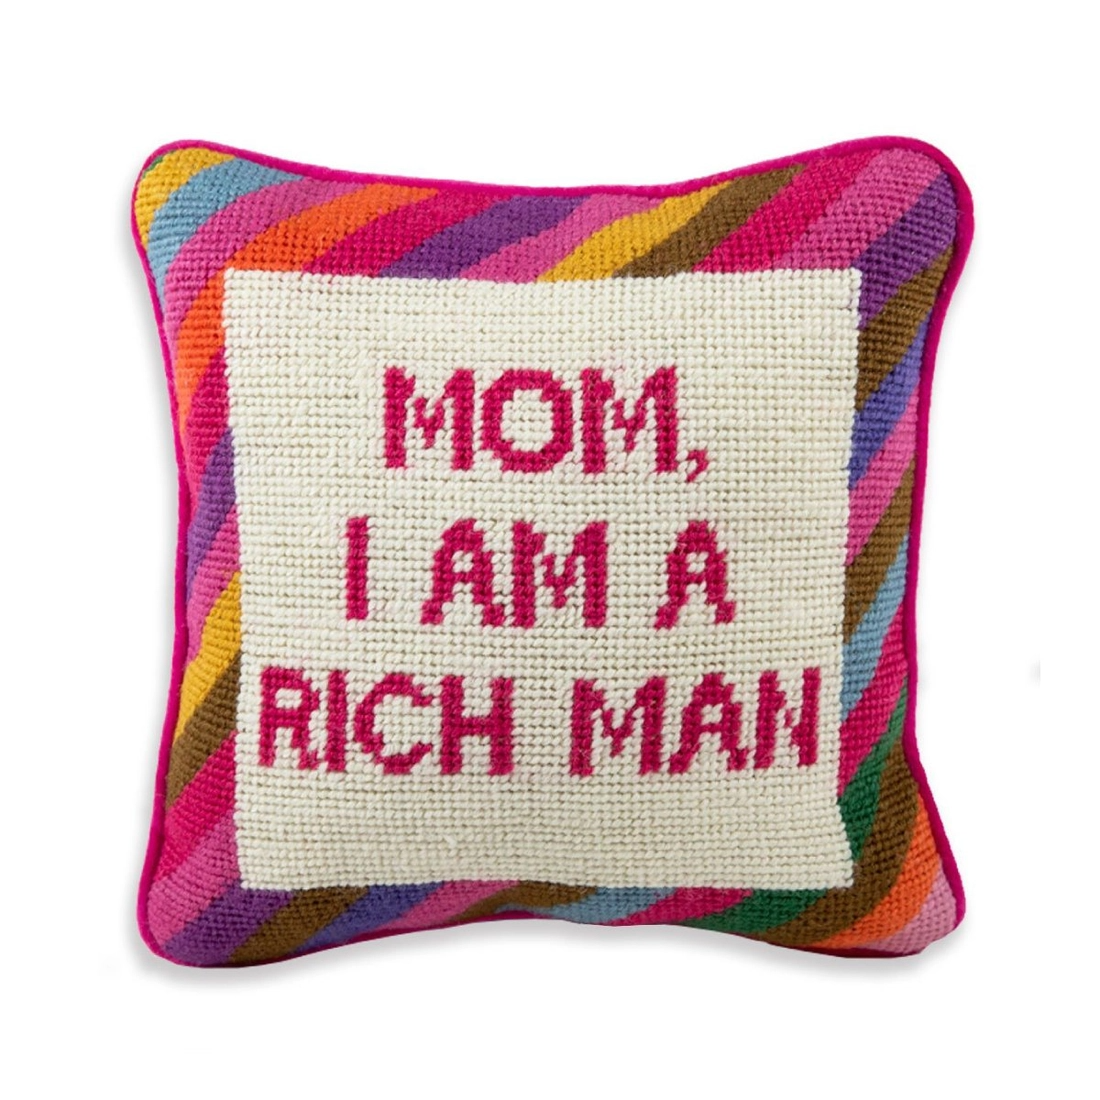 Mom I am a rich man pillow